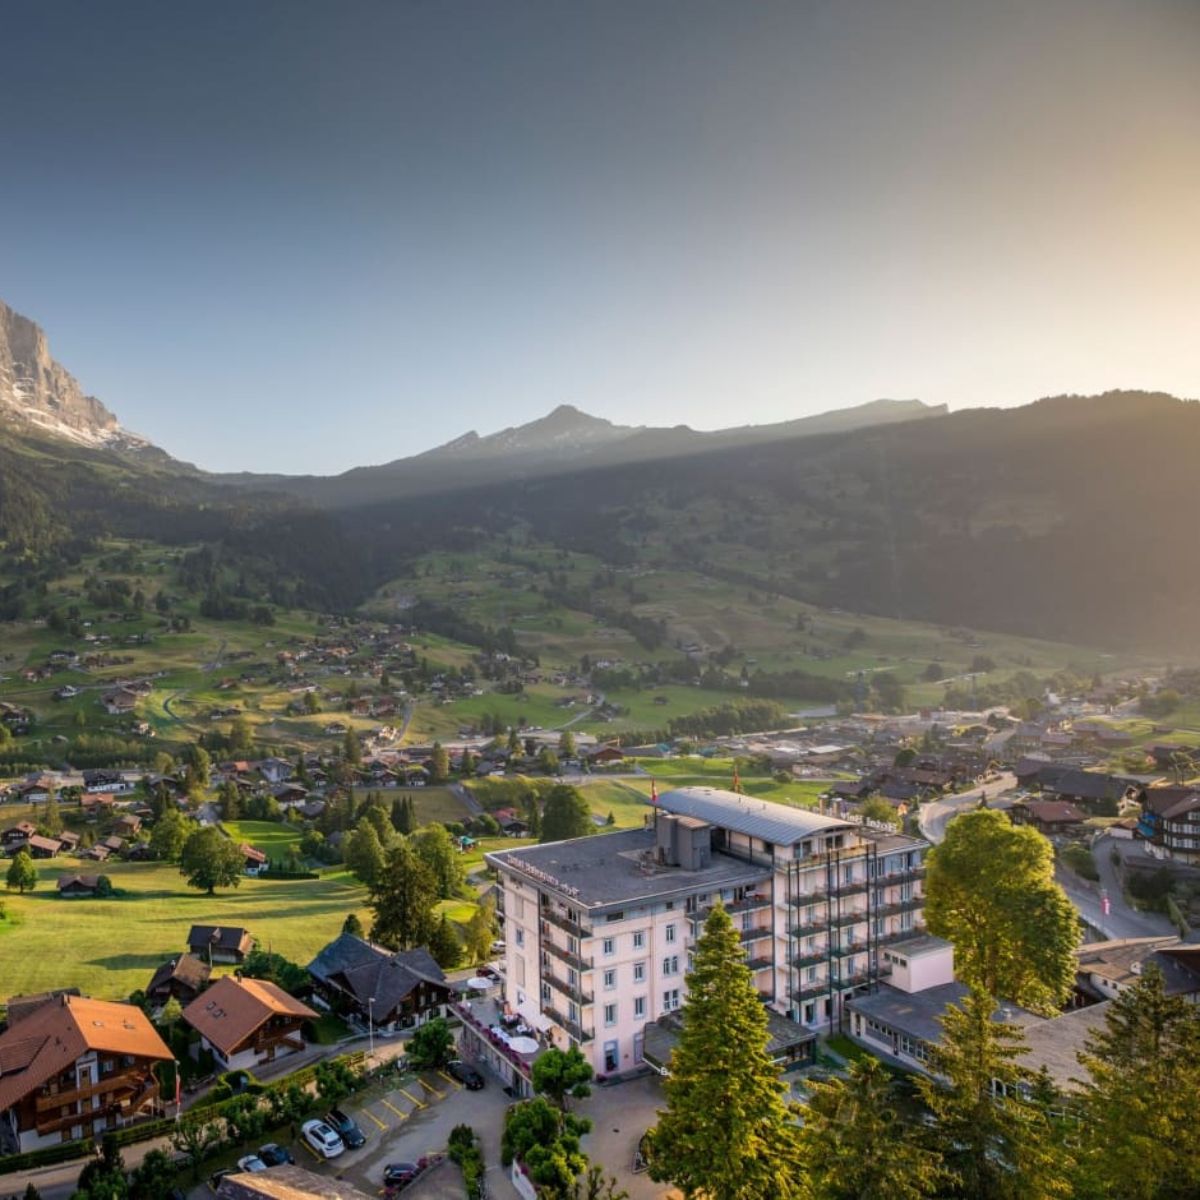 Hotel Belvedere Grindelwald